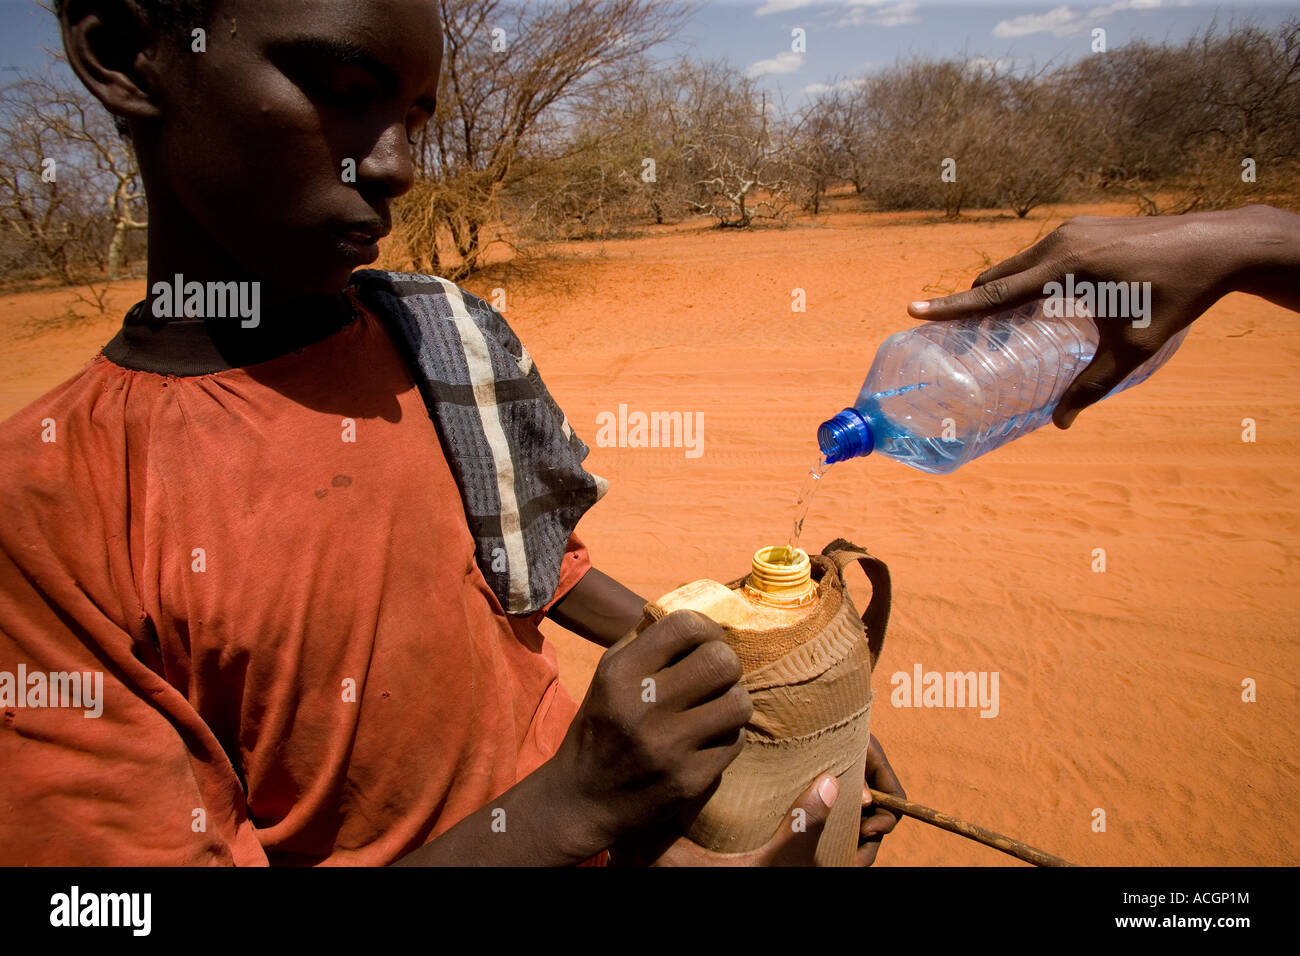 Nord-Ost-Kenia 6. März 2006 Nomad junge bekommt Wasser von einem vorbeifahrenden Autofahrer während der schlimmsten Dürre in 20 Jahren Stockfoto